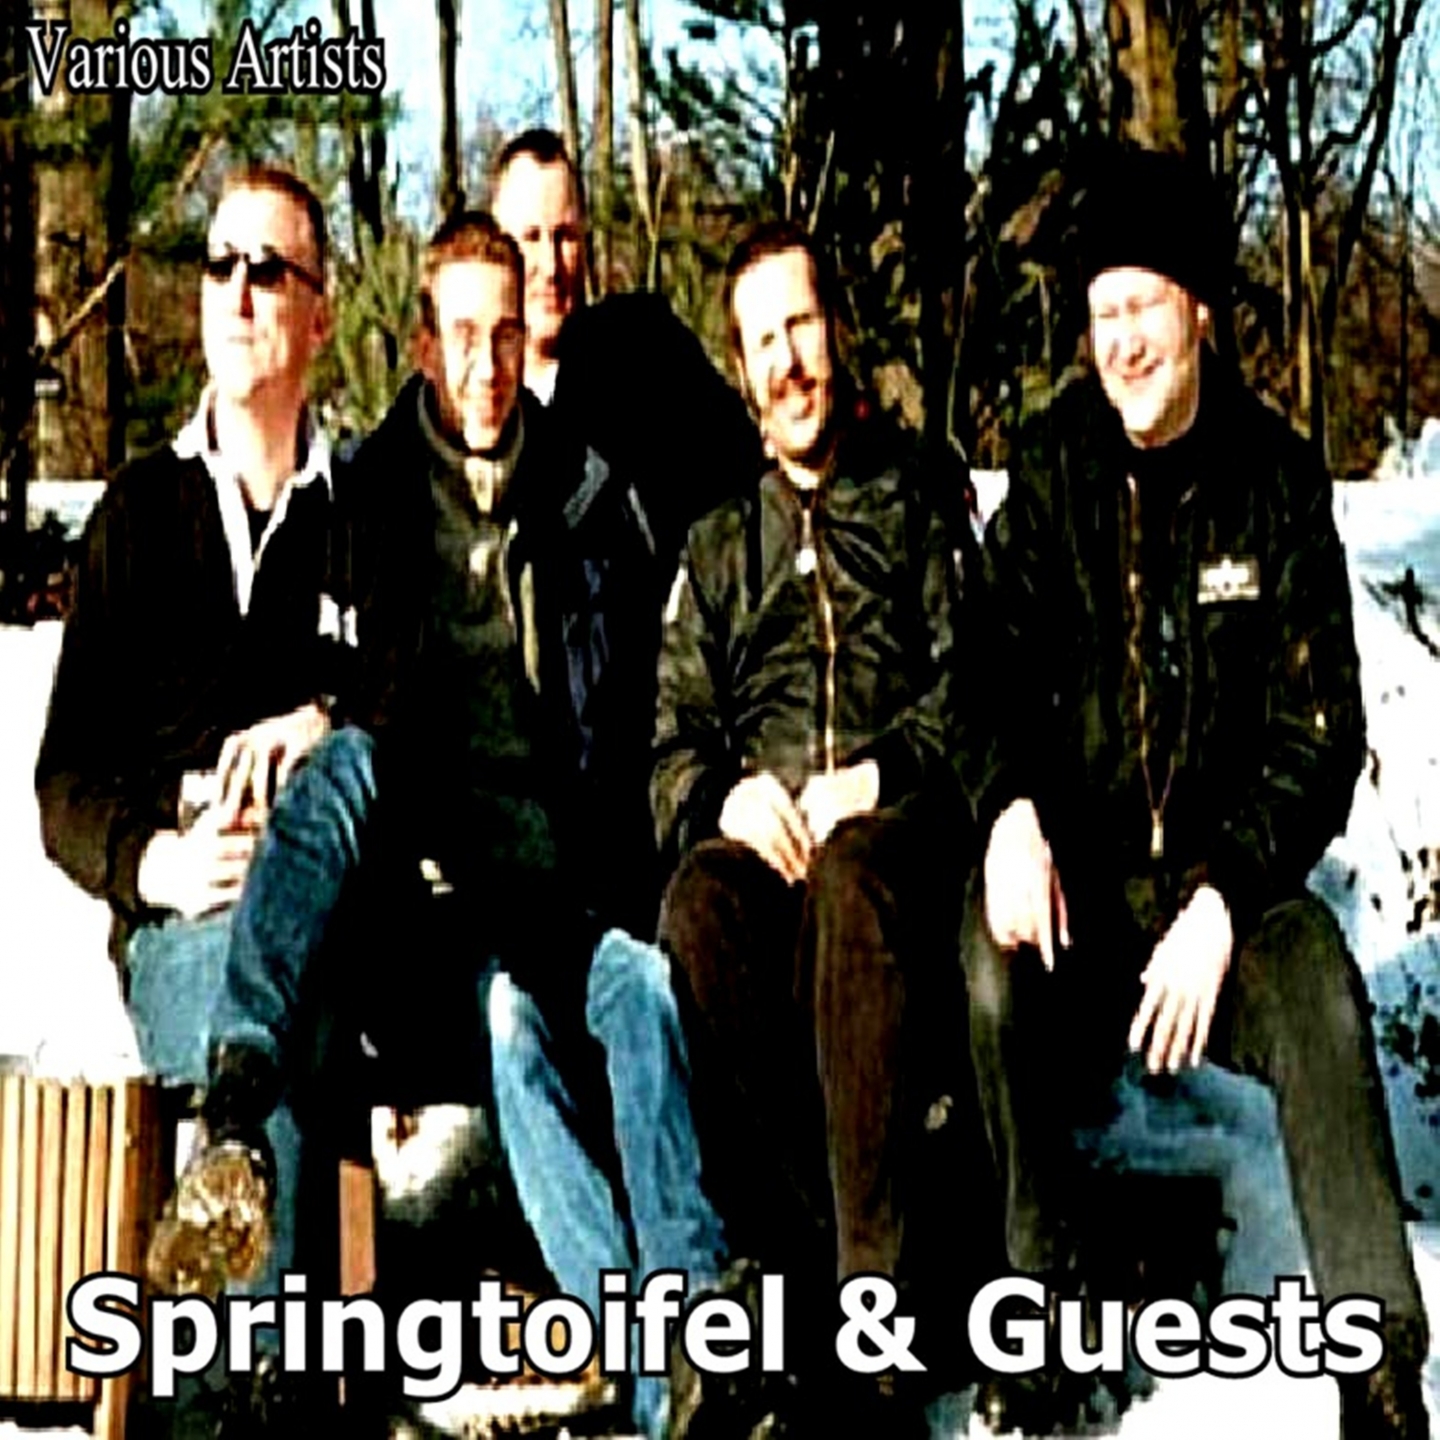 Springtoifel & Guests